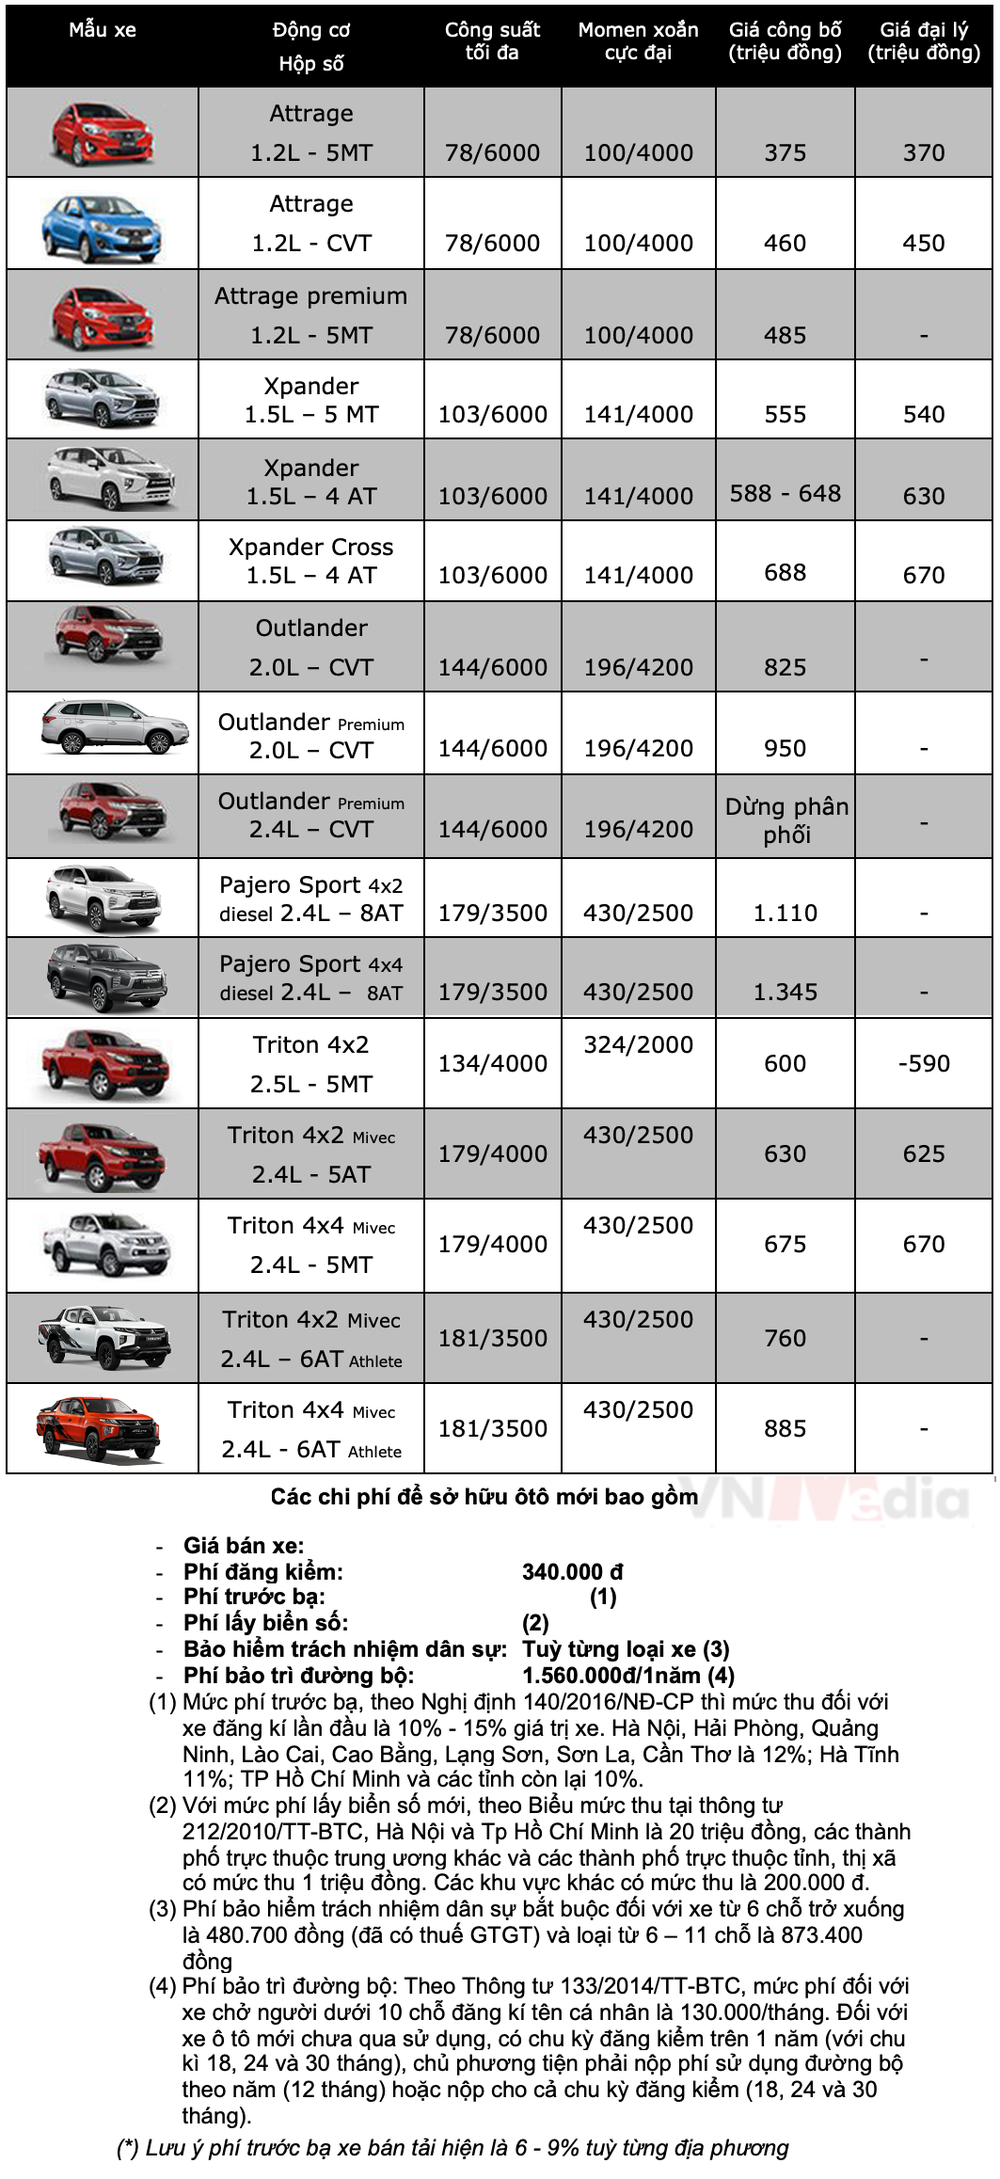 Bảng giá xe Mitsubishi tháng 2: Mitsubishi Pajero Sport được ưu đãi 50% lệ phí trước bạ - Ảnh 2.